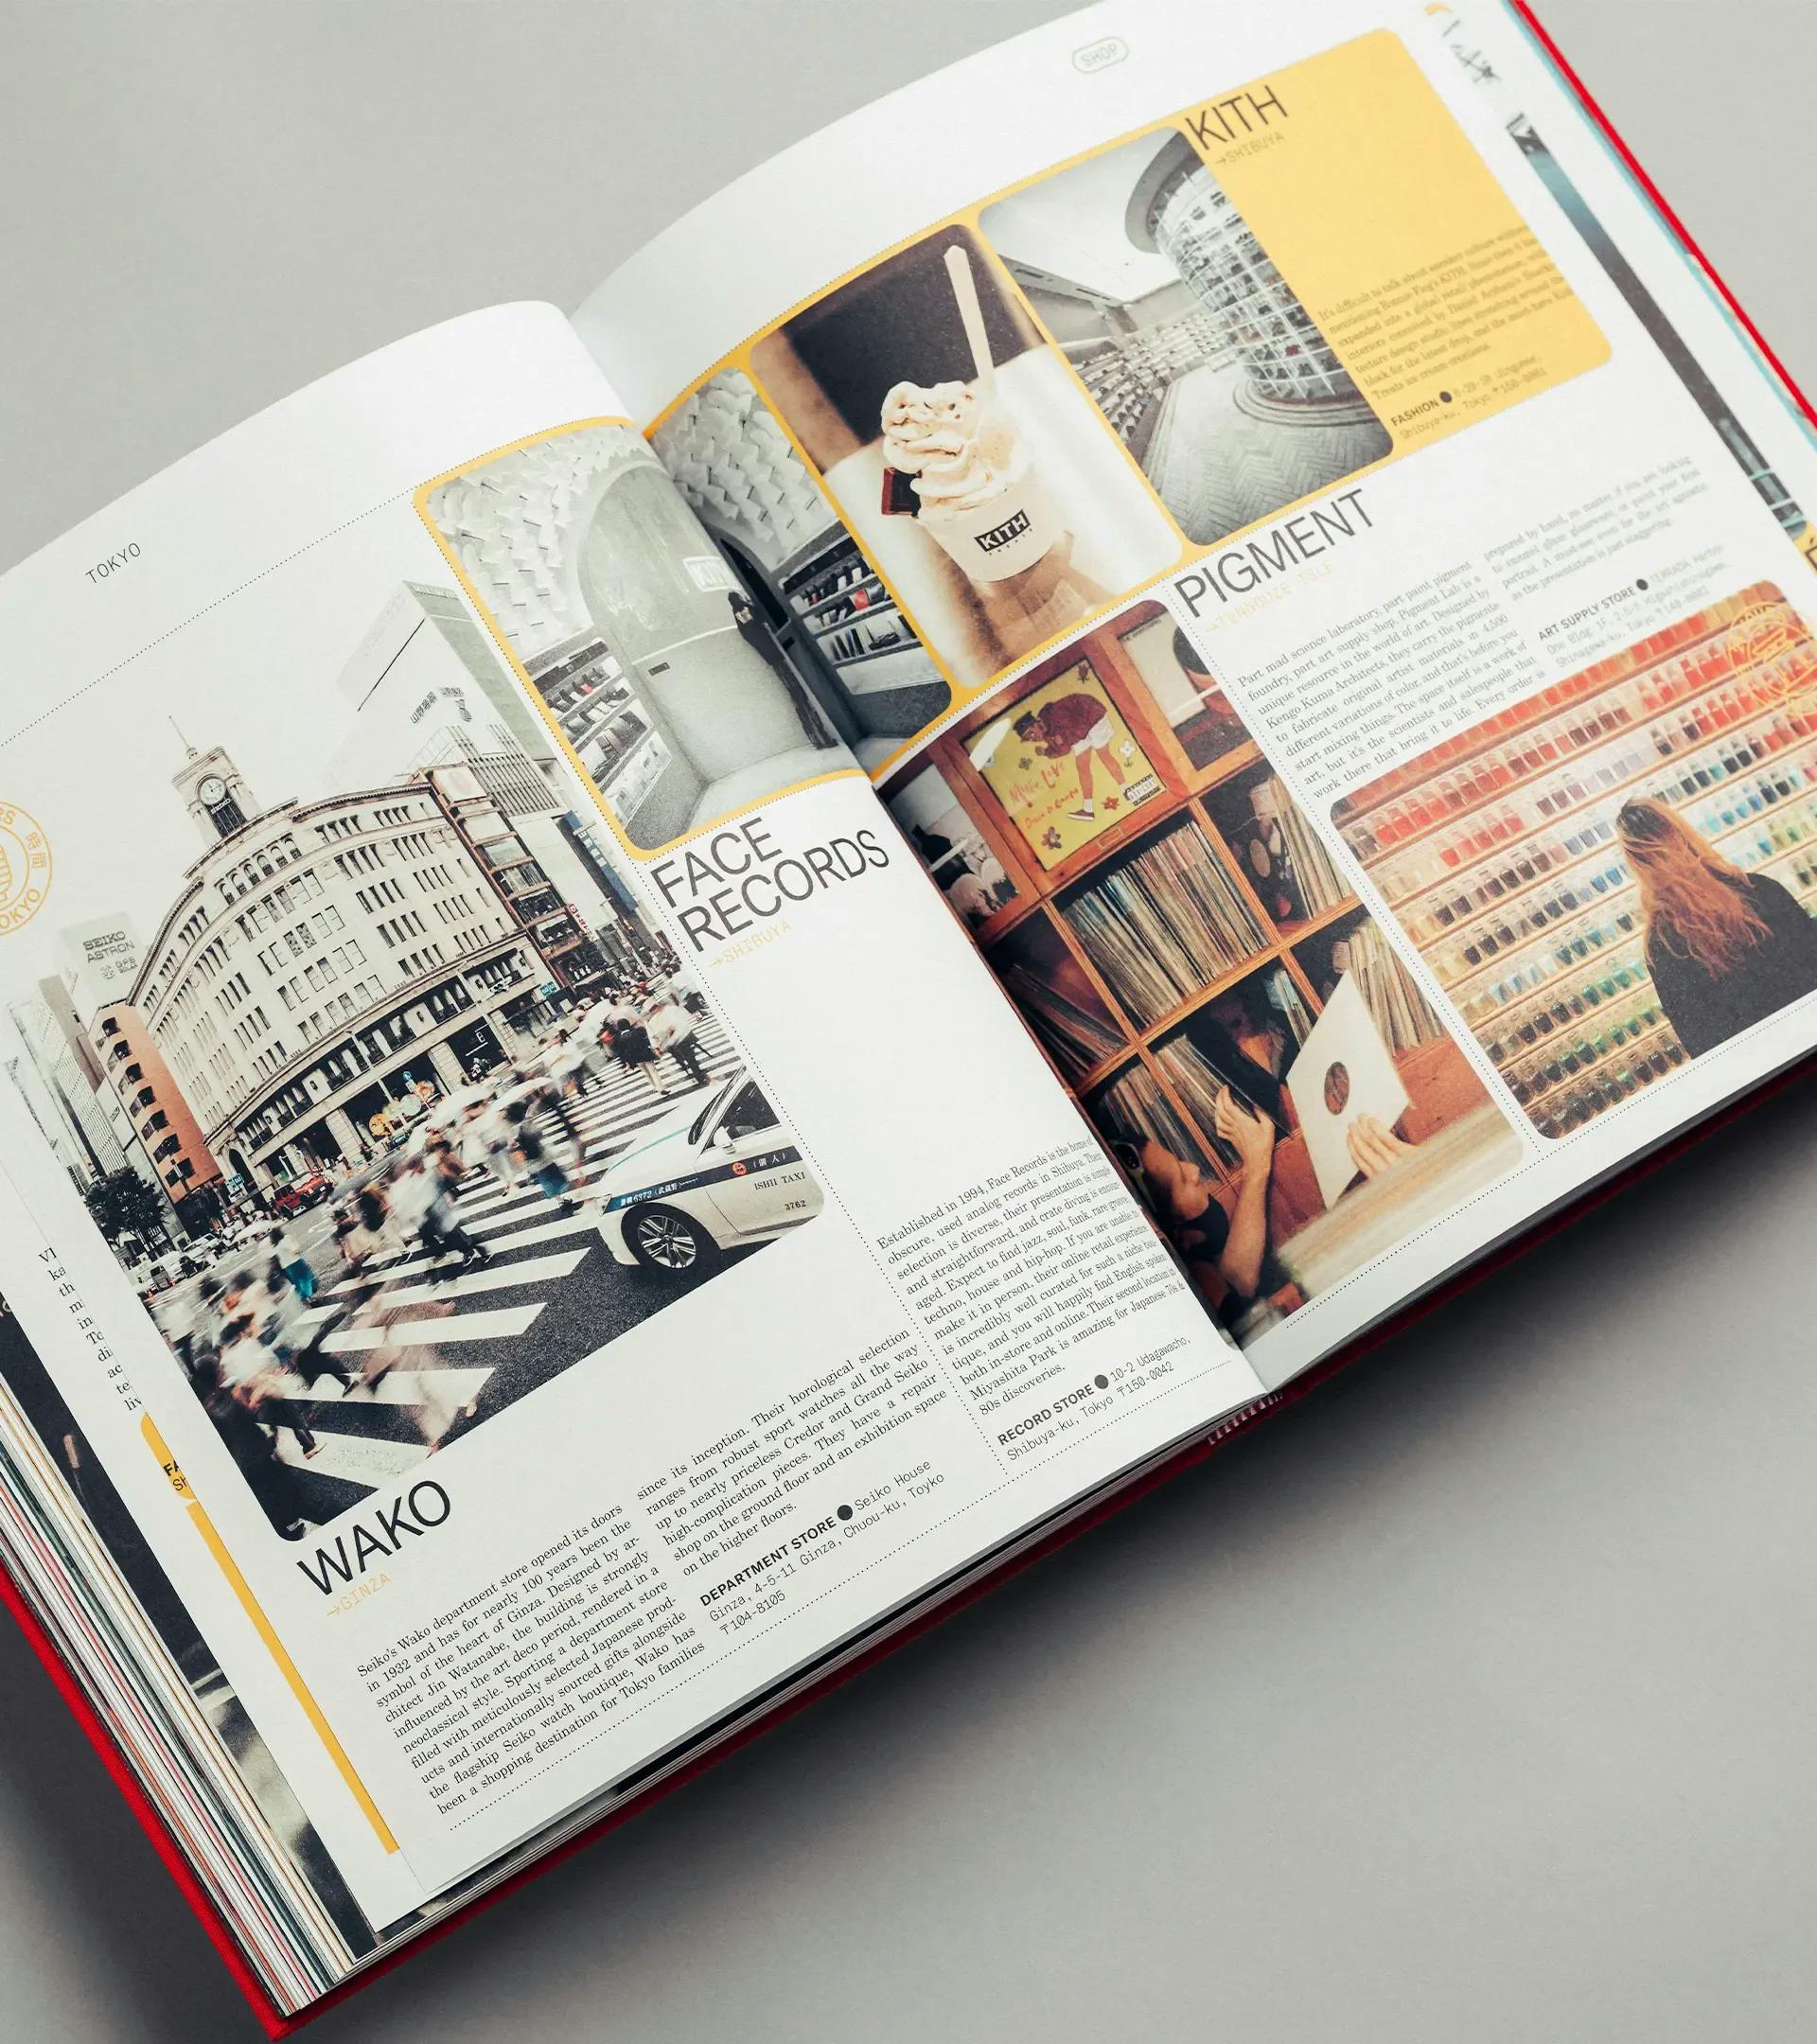 Book 'Type 7 Travel Guide: Tokyo' | PORSCHE SHOP